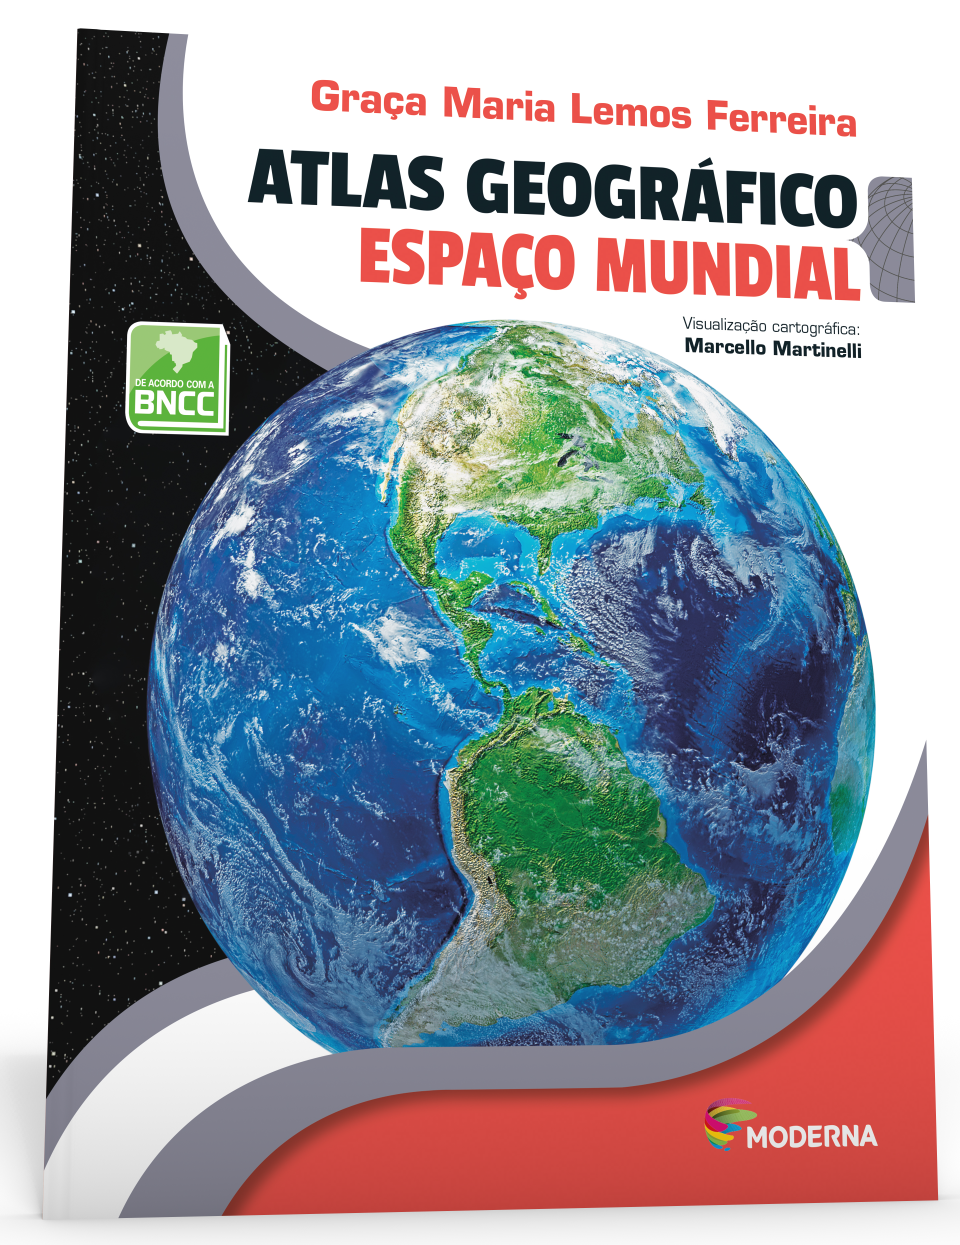 Imagem com capa do Atlas Geográfico Espaço Mundial